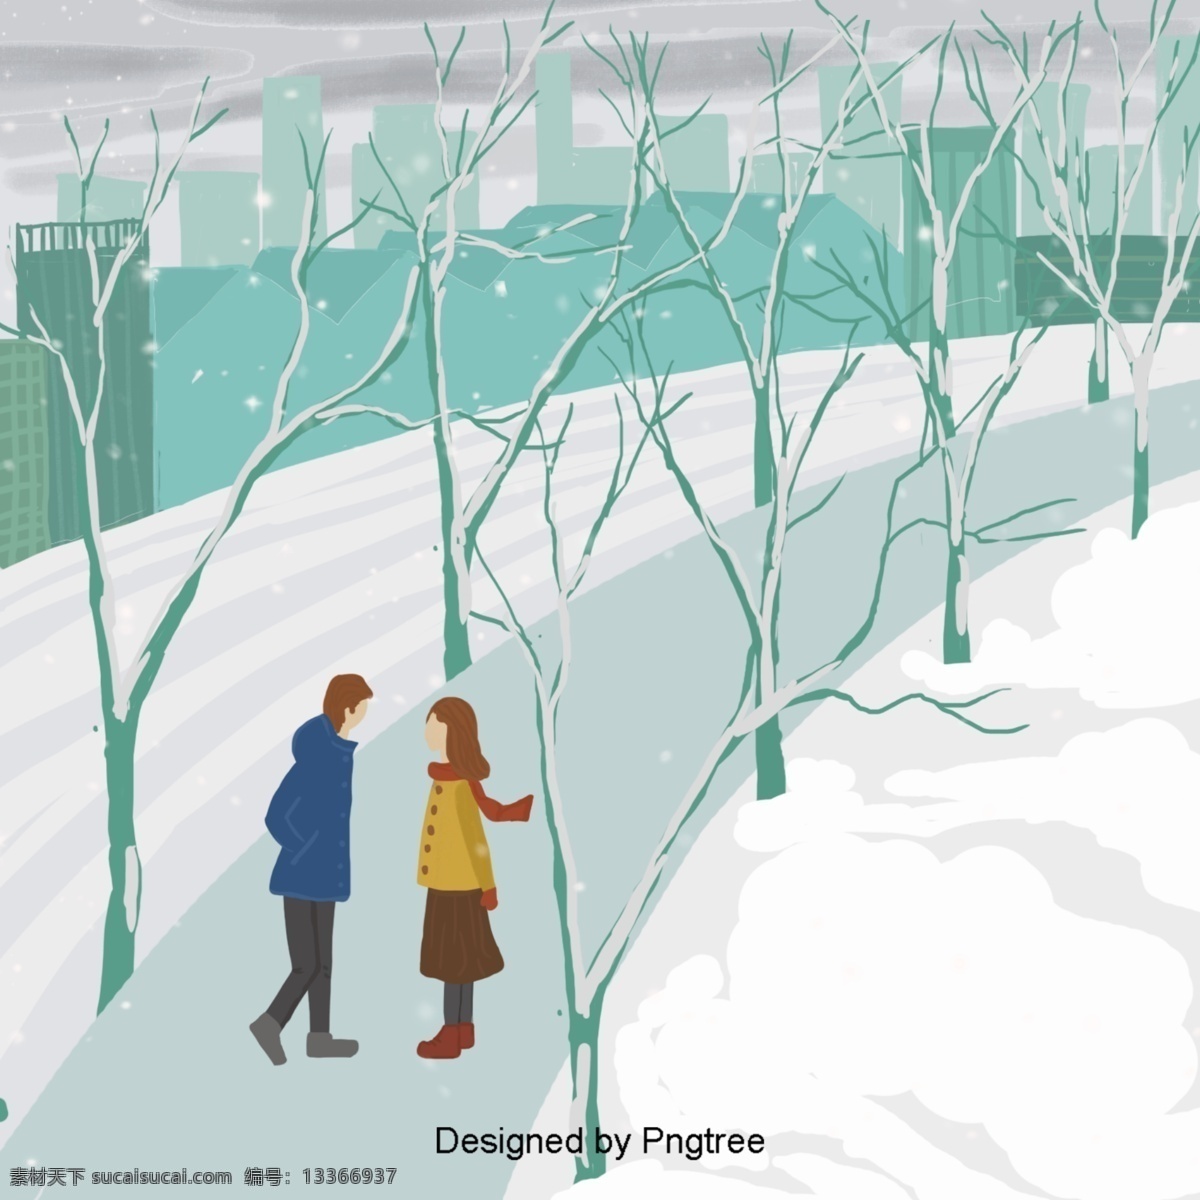 浪漫 情侣 见 插图 背景 冬天 一对 小 男孩 小女孩 城市 高速公路 积雪 树 落水 洞